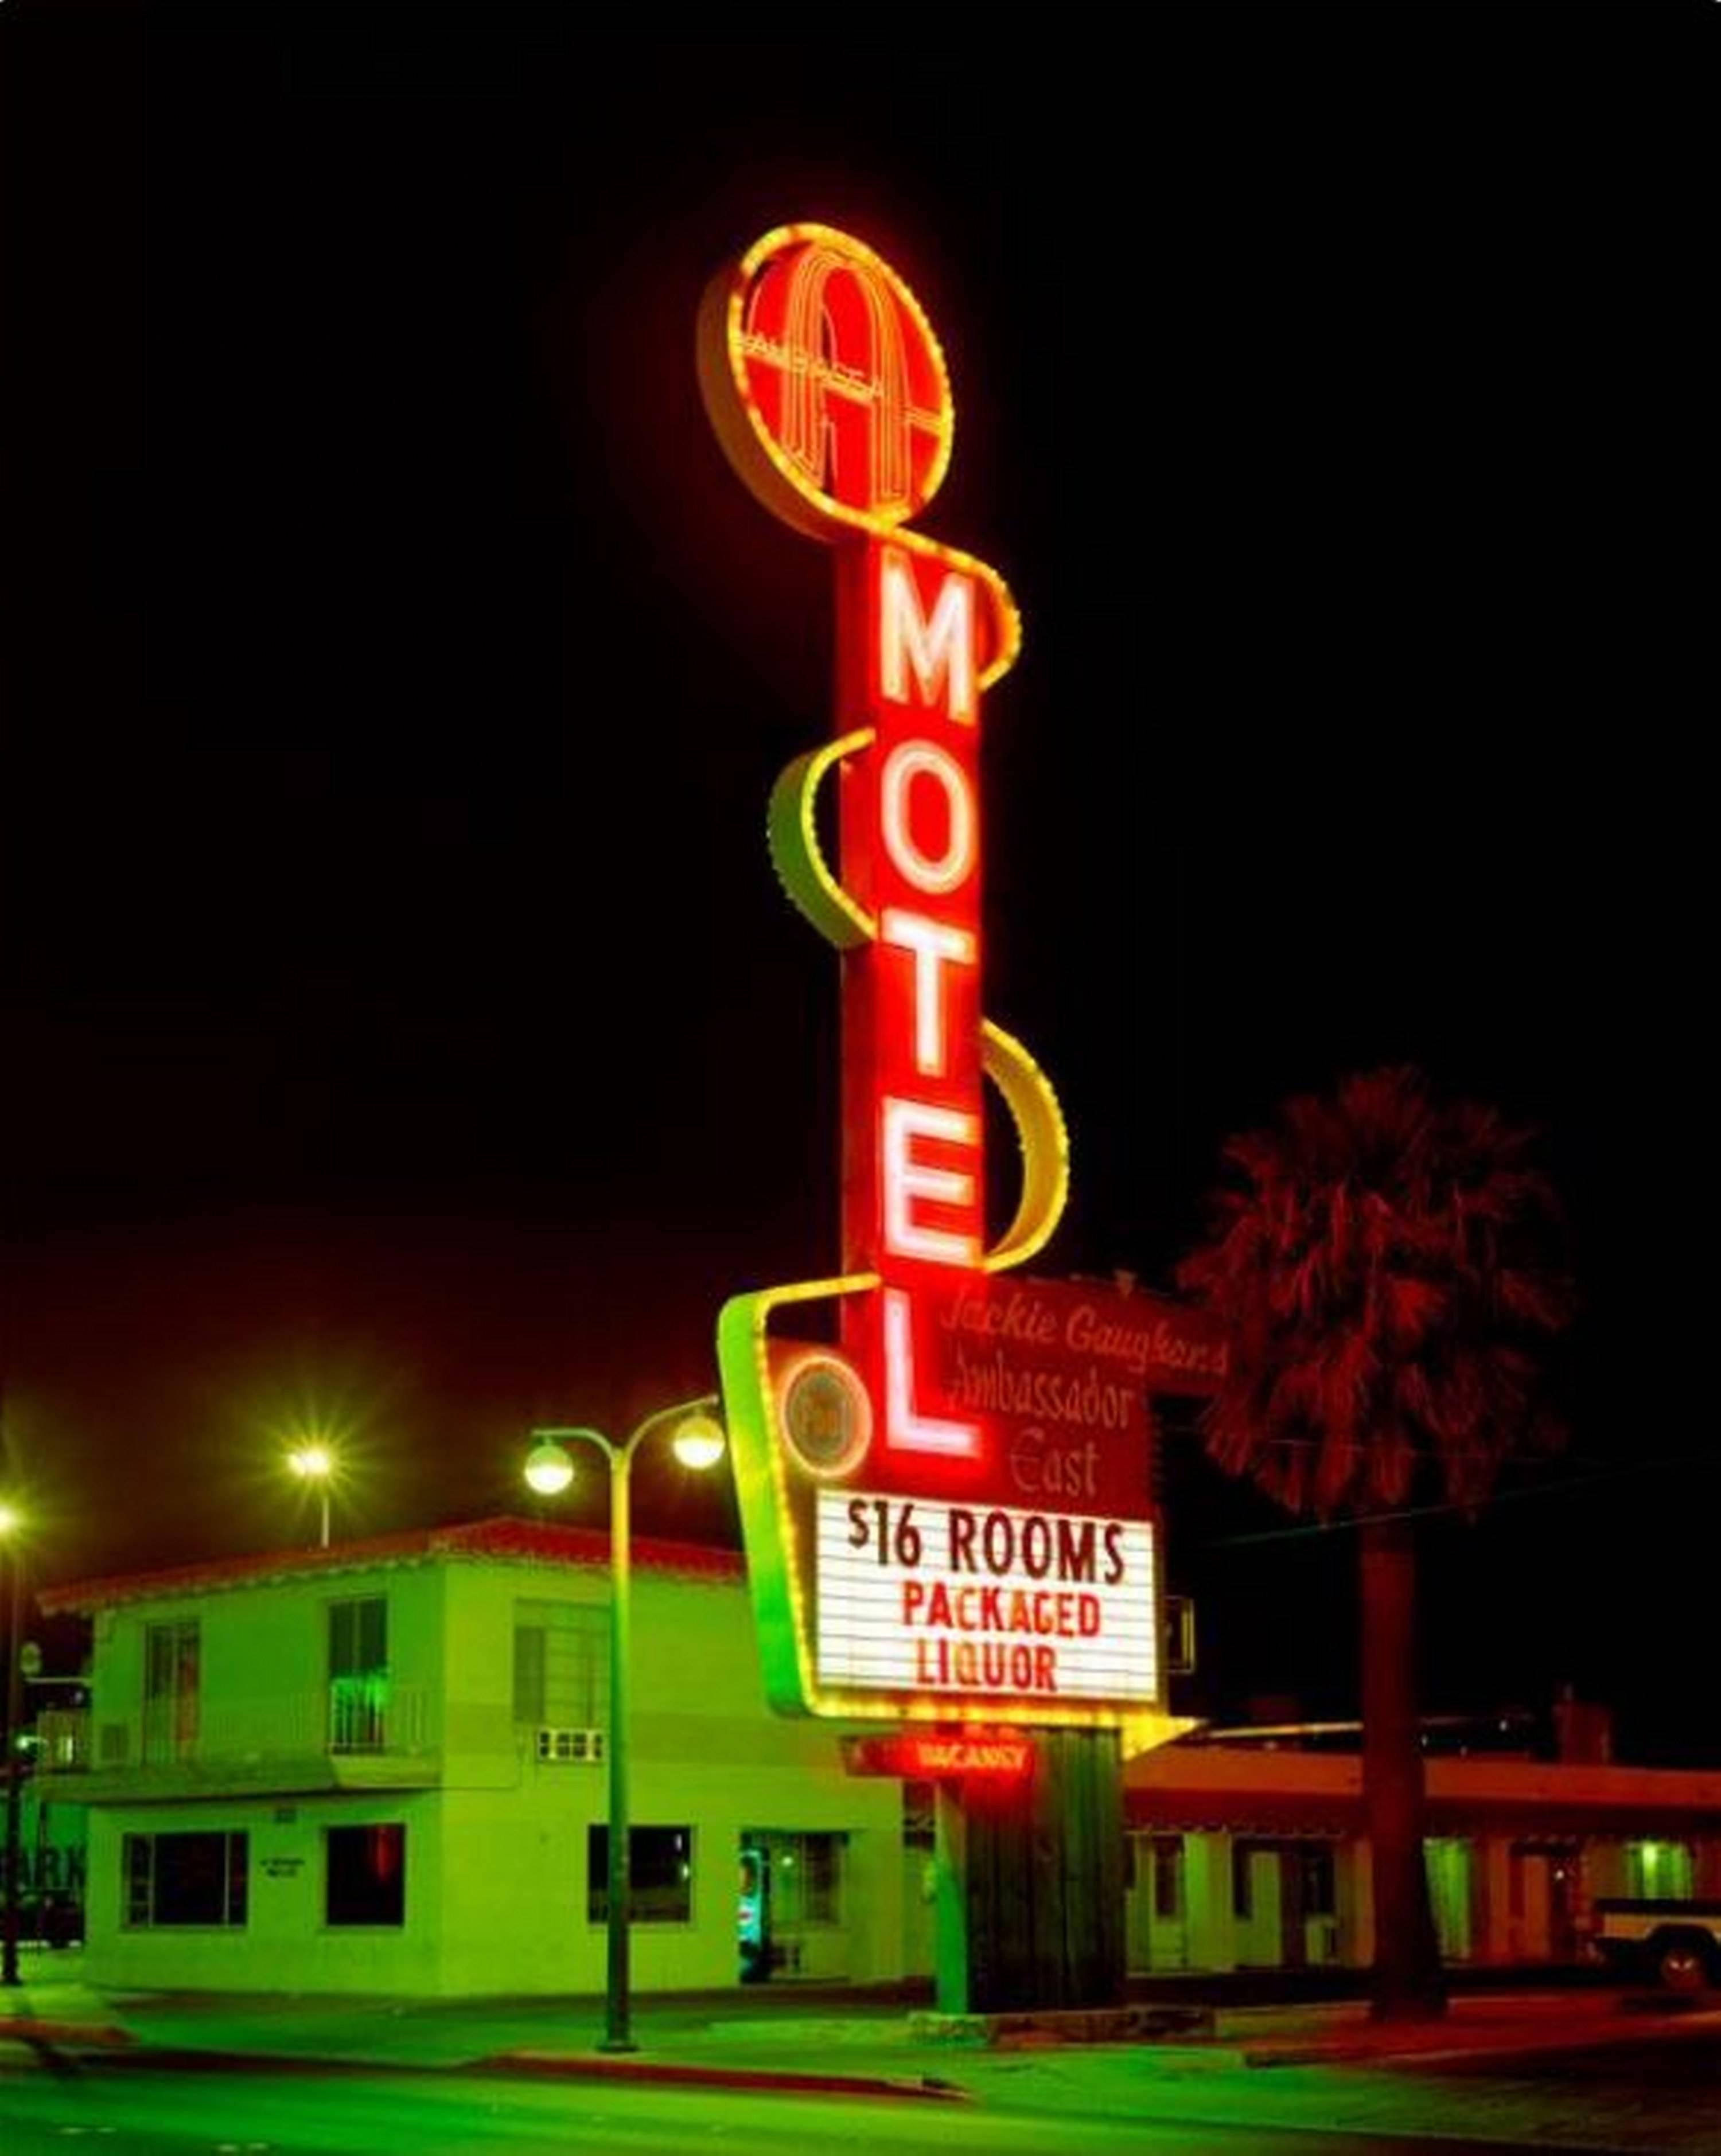 A Motel